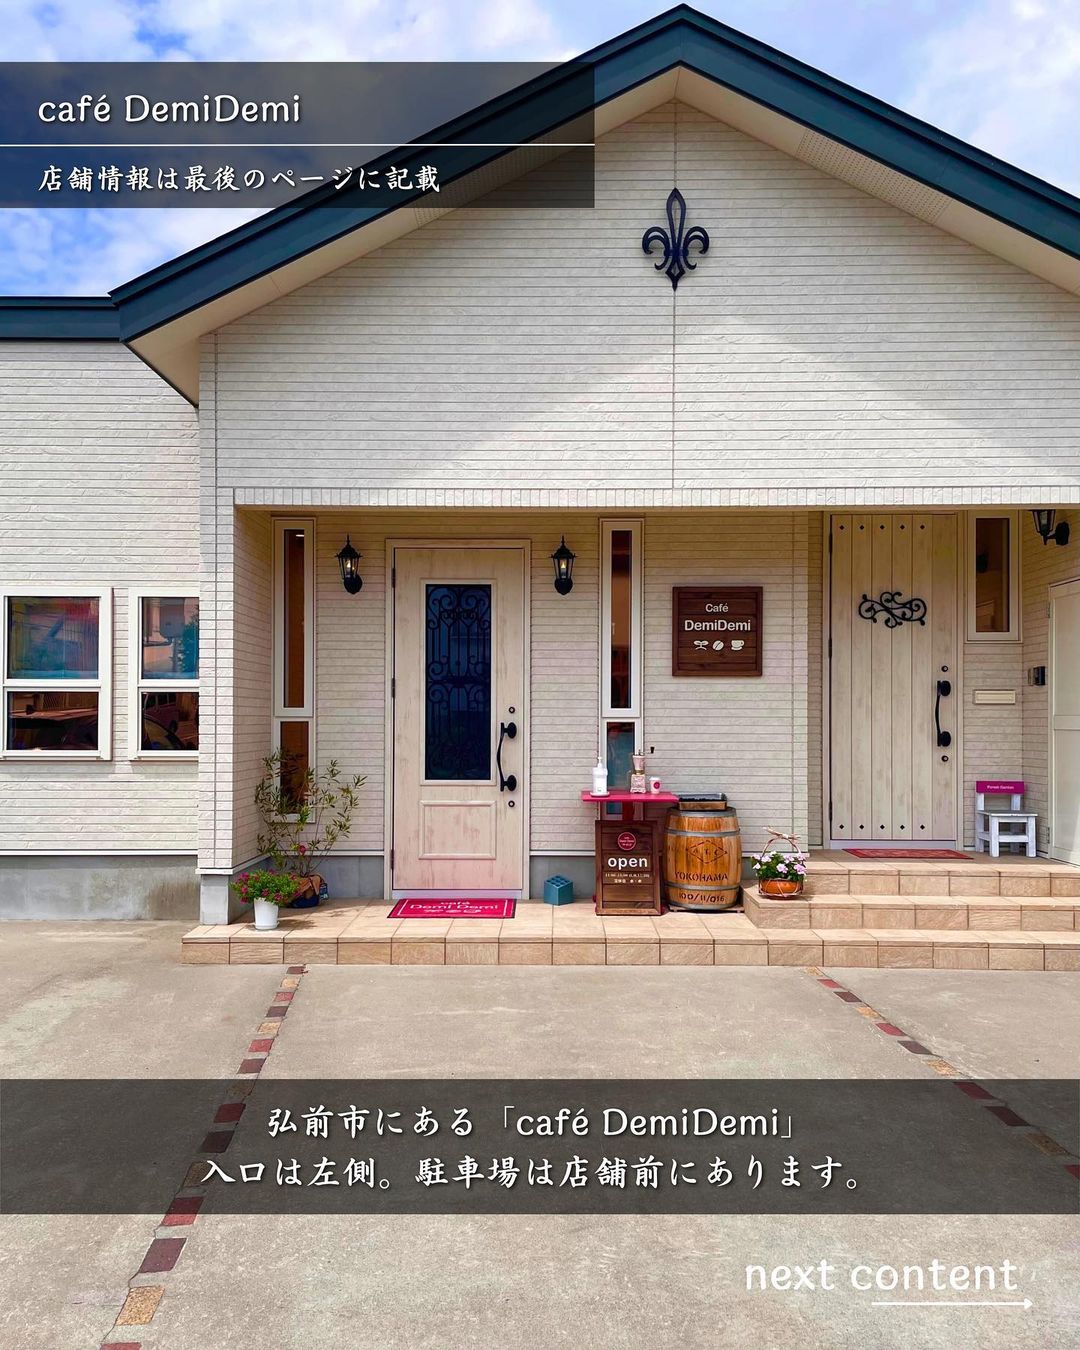 【弘前市・café DemiDemi】外観